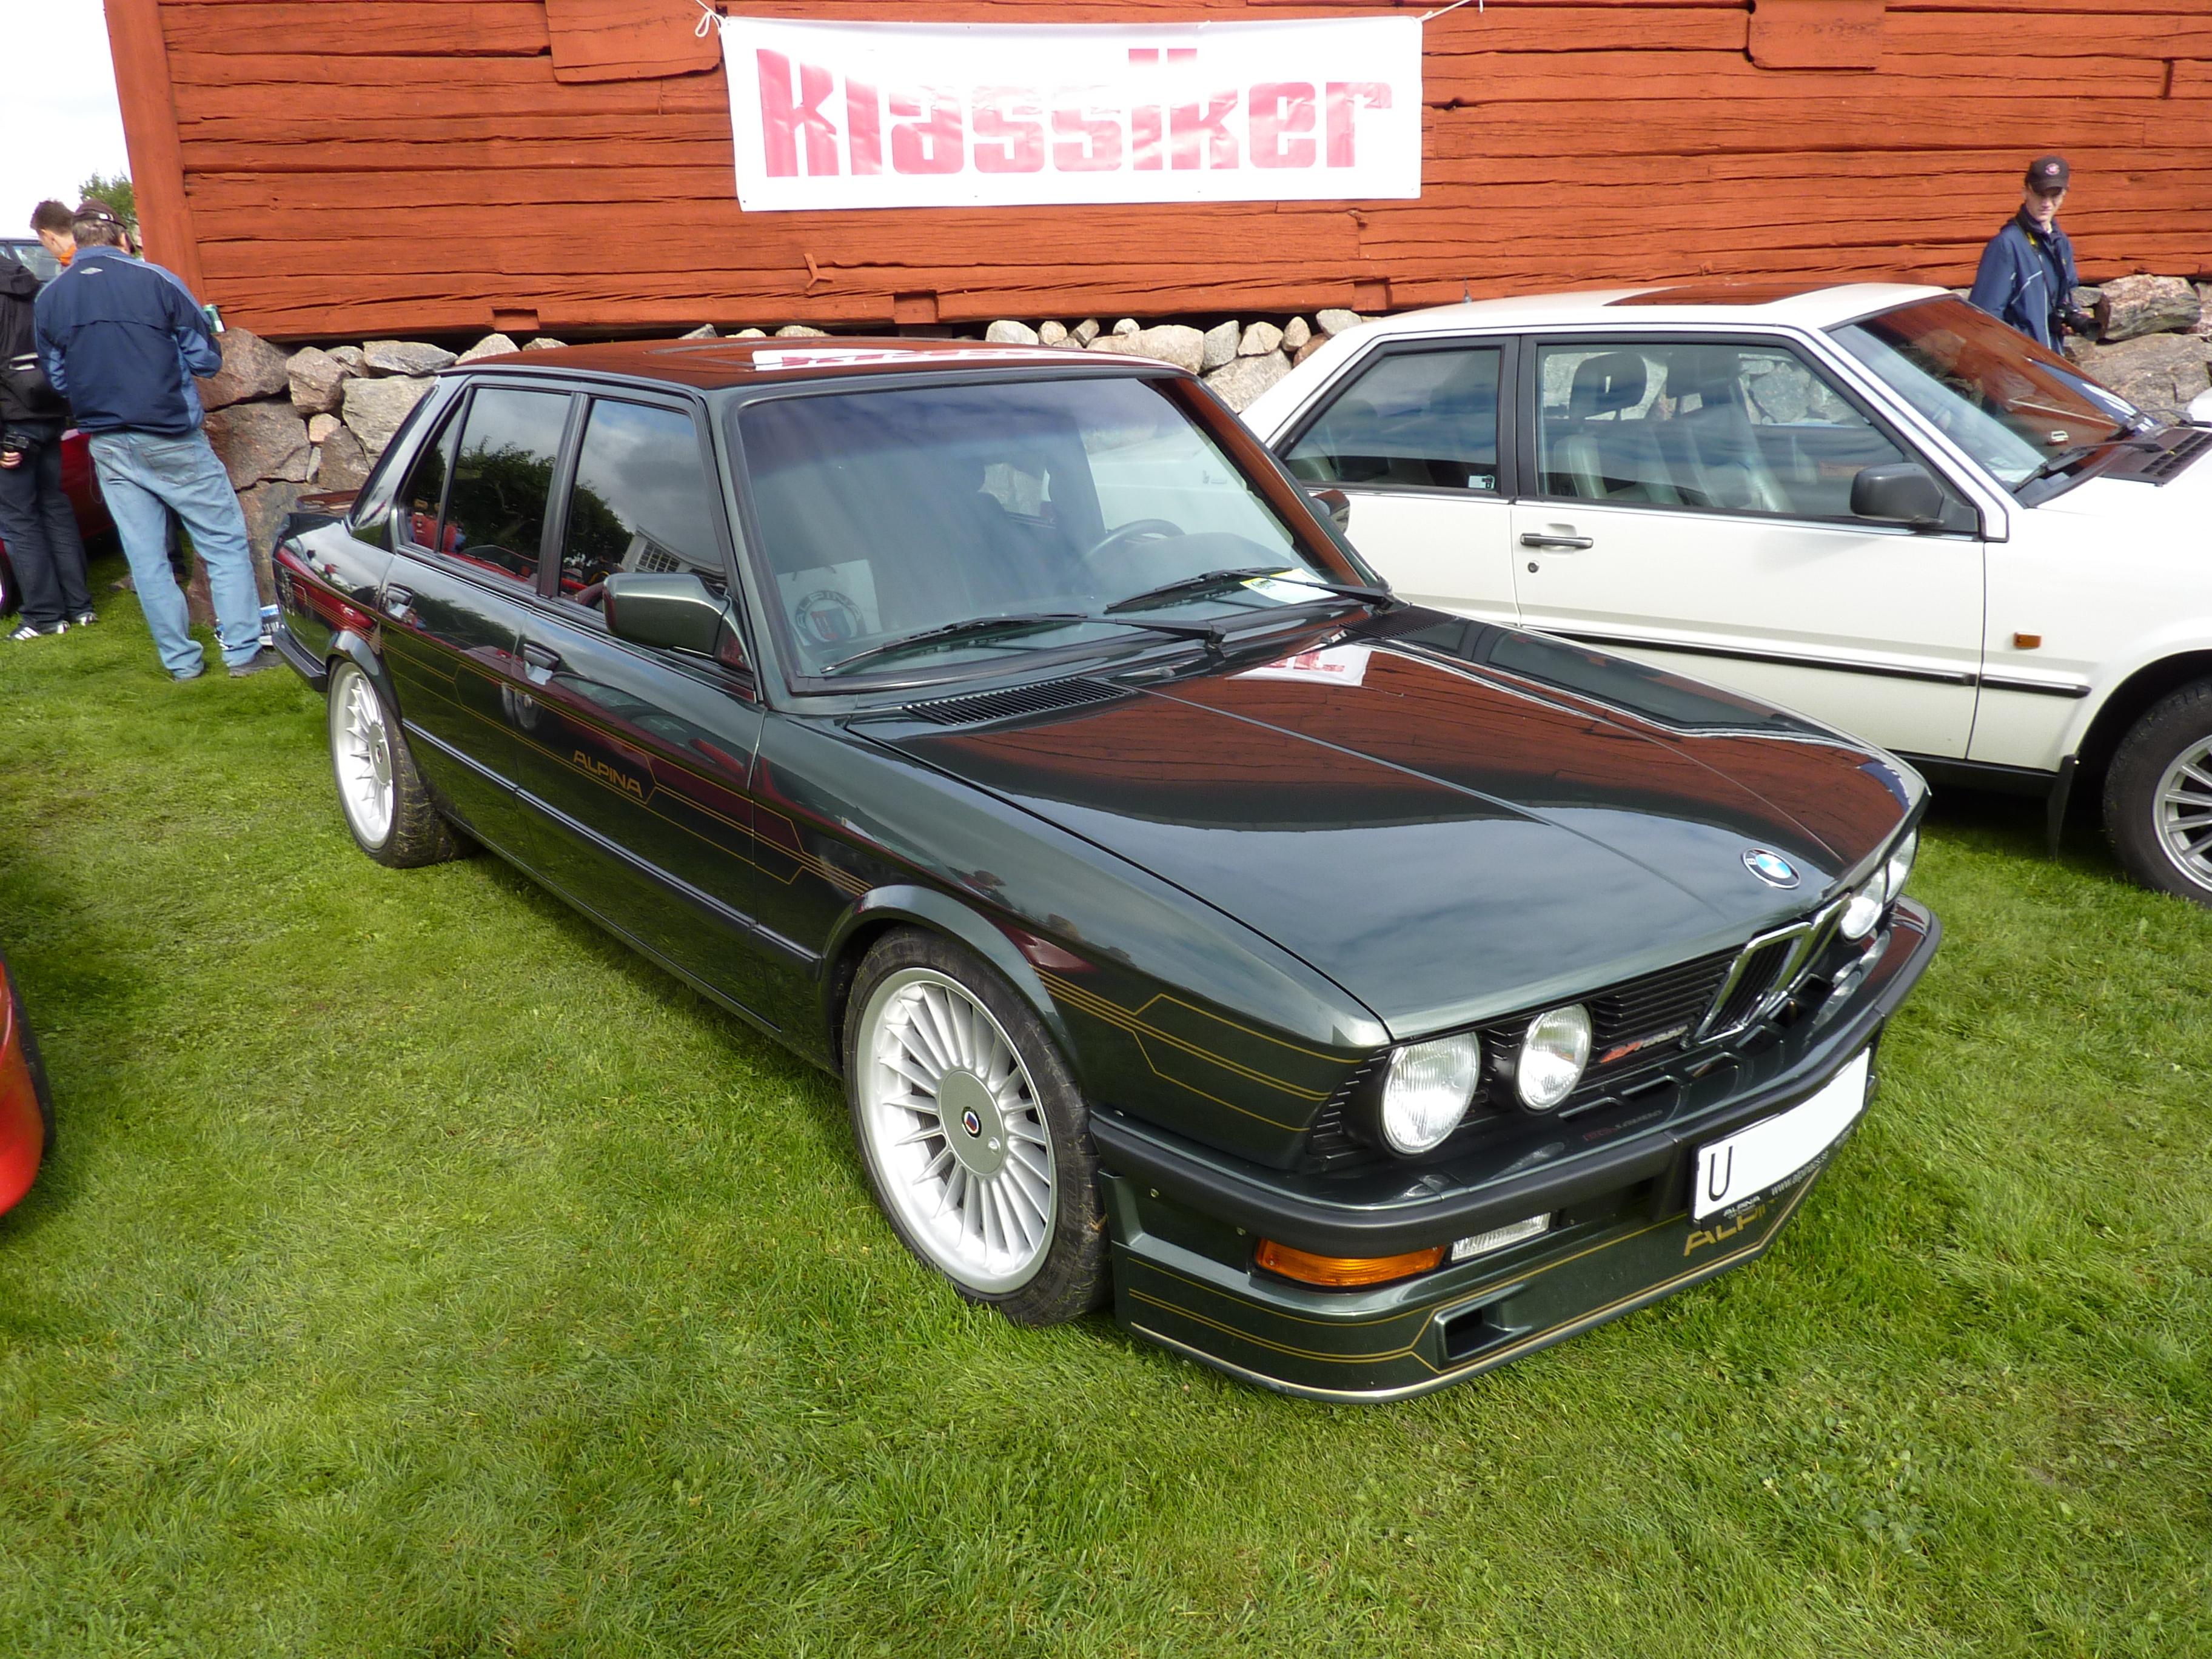 BMW ALPINA B7 TURBO 1985 | Flickr - Photo Sharing!